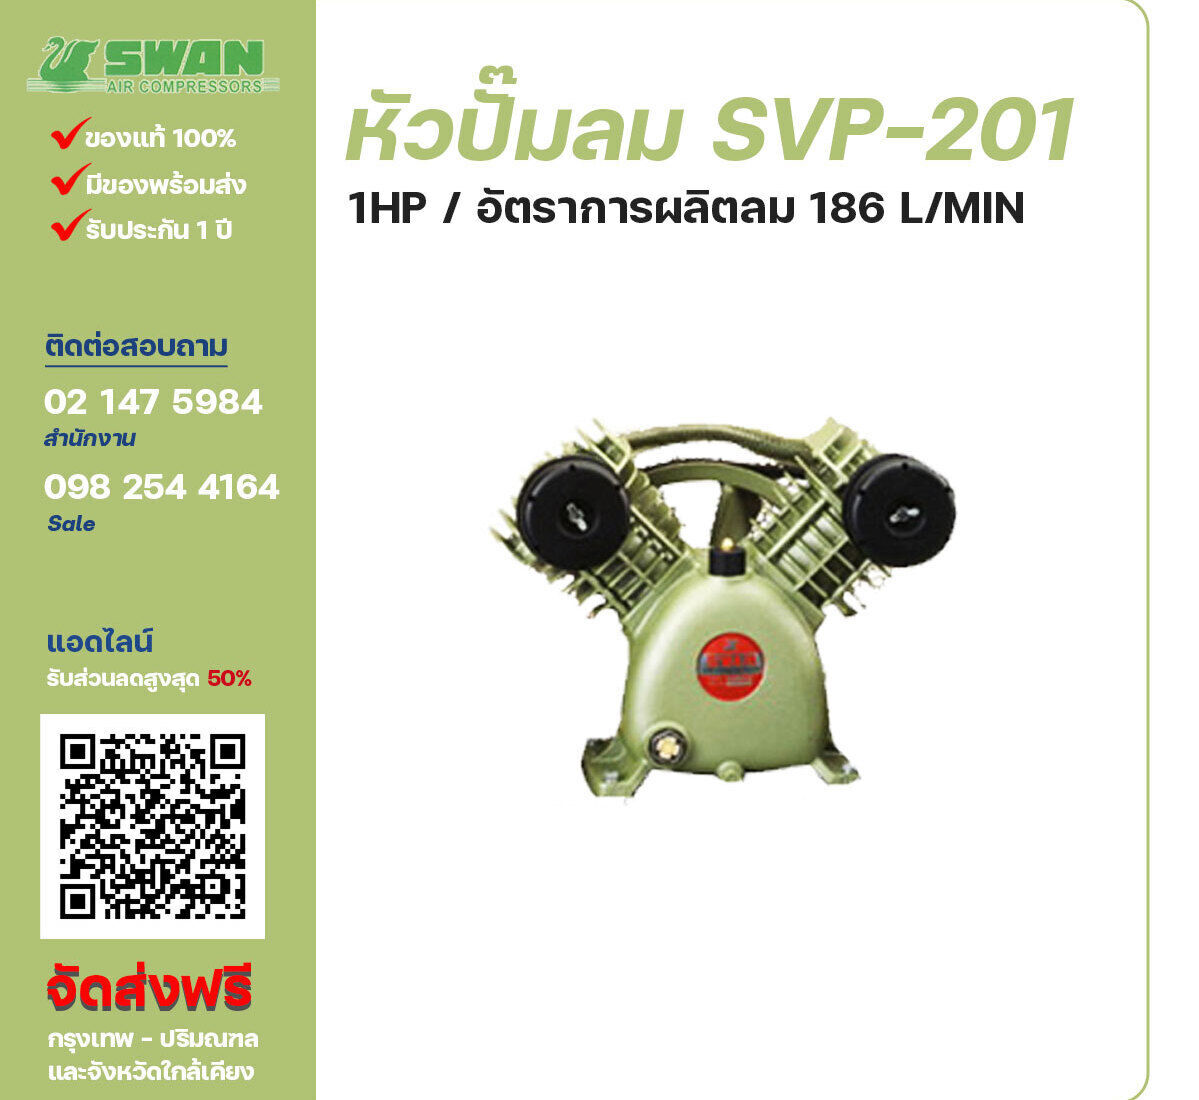 จำหน่ายหัวปั๊มลมสวอน ของแท้ 100% SWAN Bare Compressor รุ่น SVP-201 ขนาด 1 แรงม้า อัตราการผลิตลม 140 ลิตร / นาที รับประกัน 3 เดือน ตามเงื่อนไขของบริษัทฯ จัดส่งฟรี กรุงเทพ-ปริมณฑล